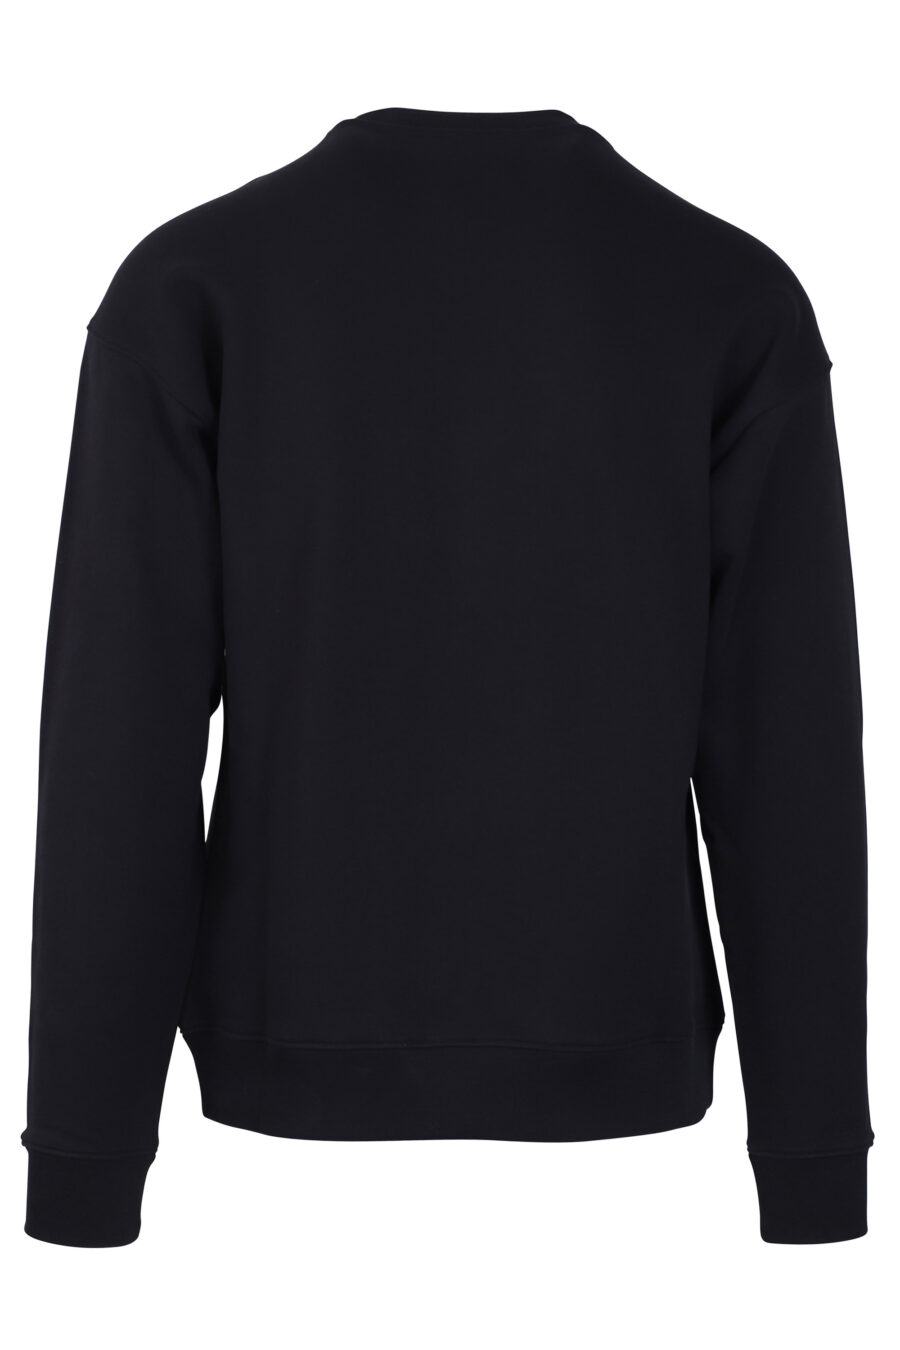 Schwarzes Sweatshirt mit weißem Streifenlogo - IMG 0762